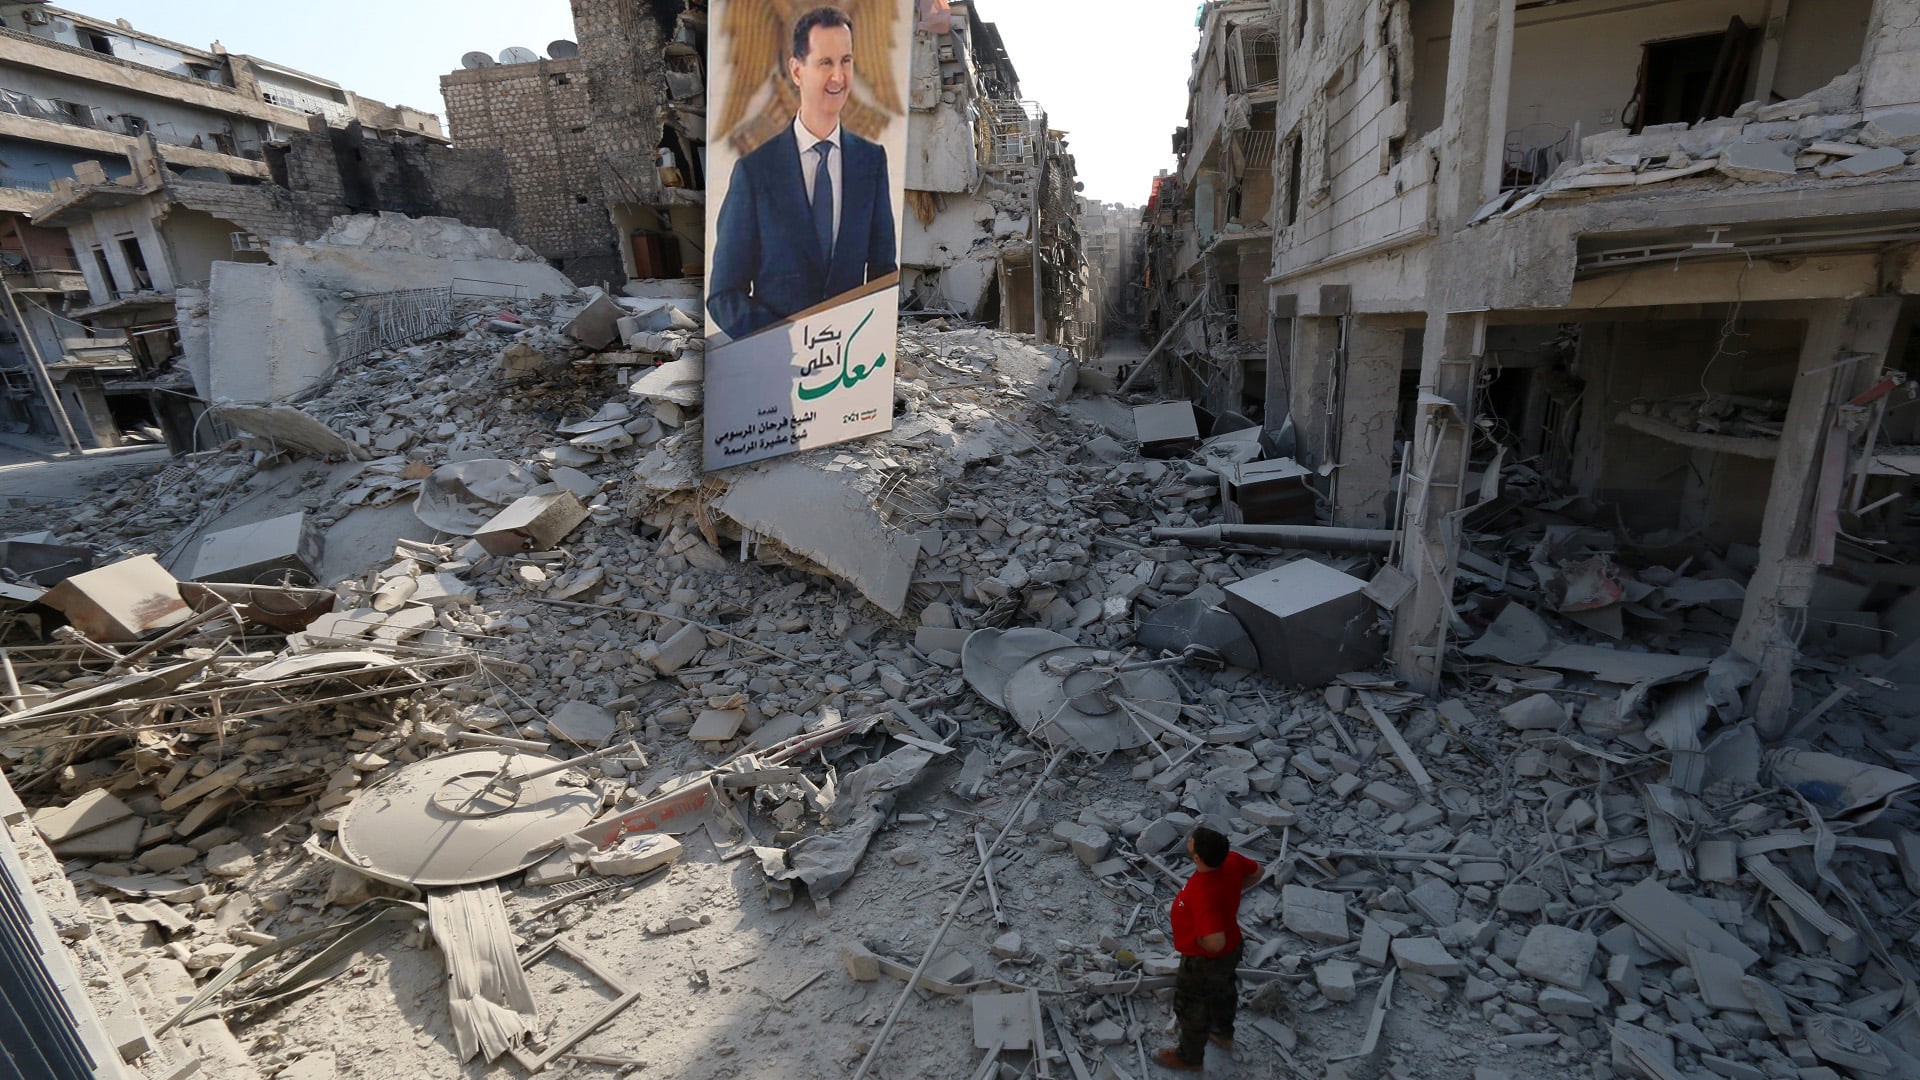 صورة بشار الأسد على الأبنية المهدمة بعد قصف قواته لها